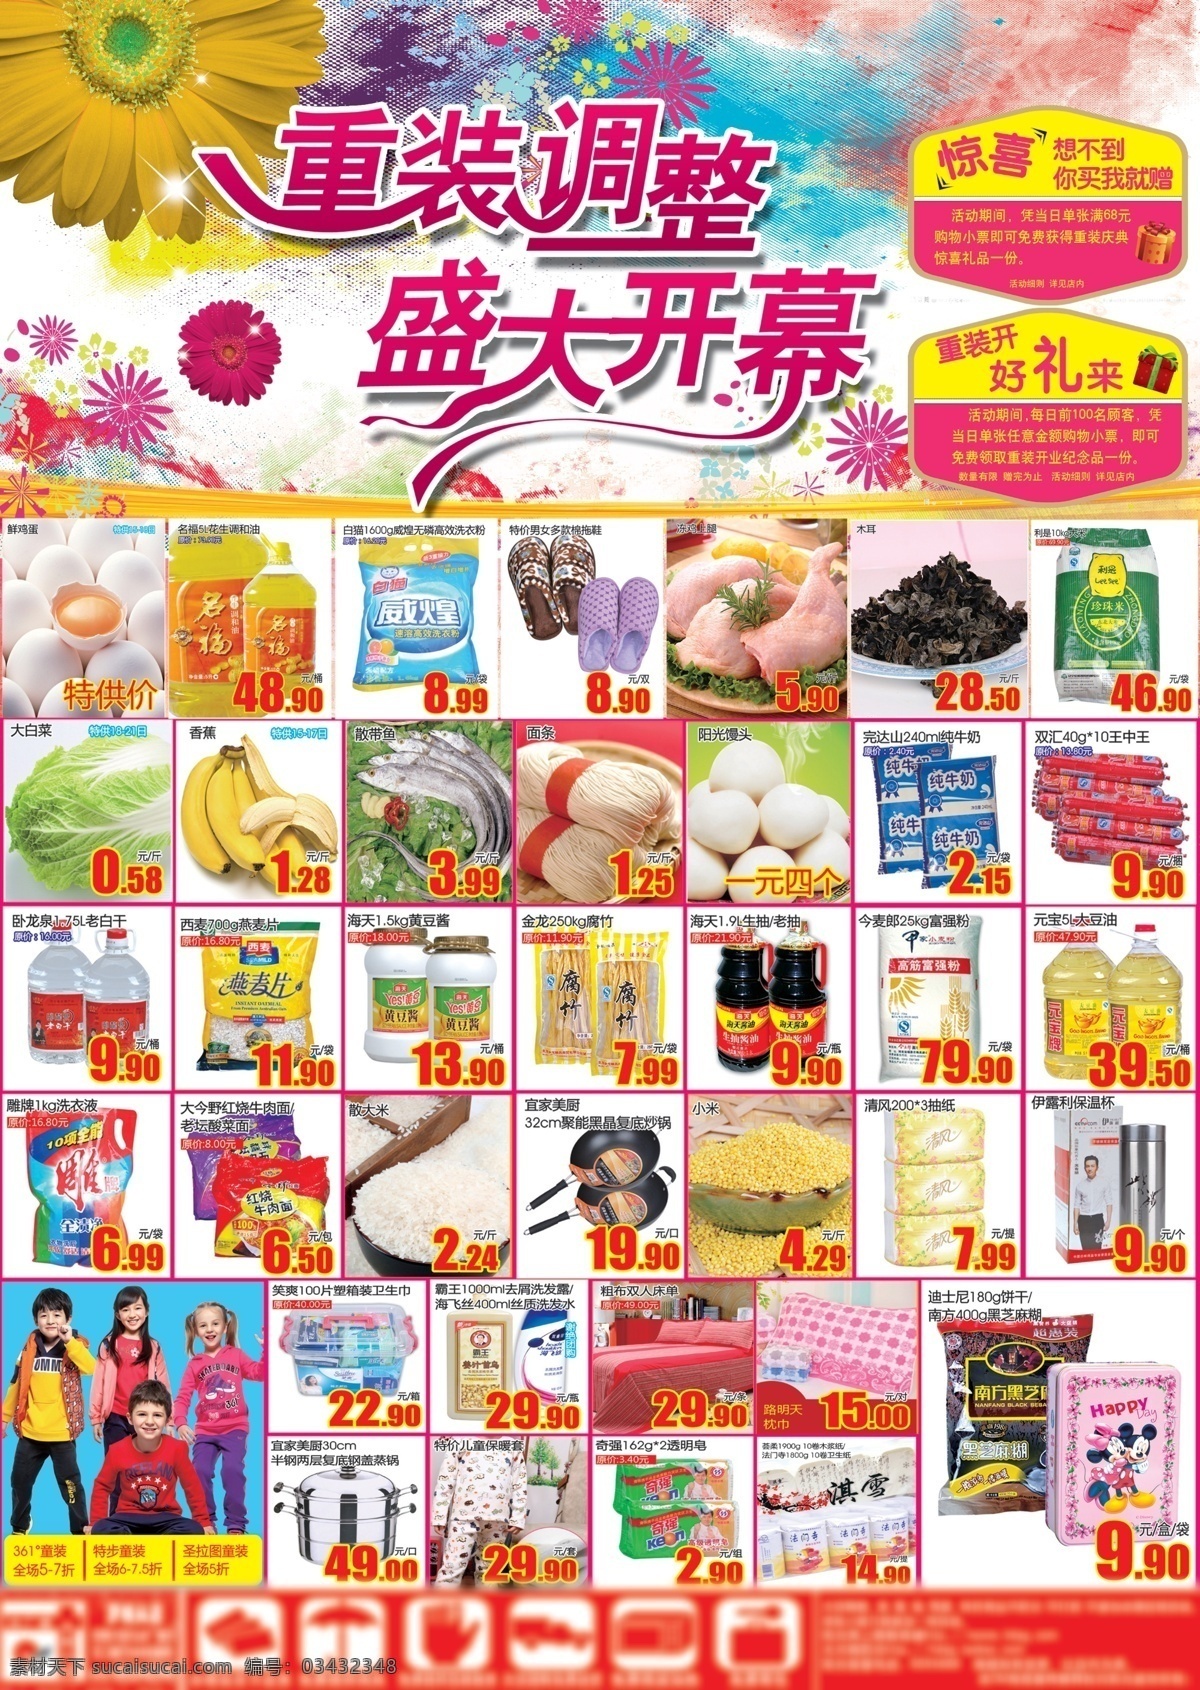 超市 活动 超市促销 超市活动 促销活动 海报 psd源文件